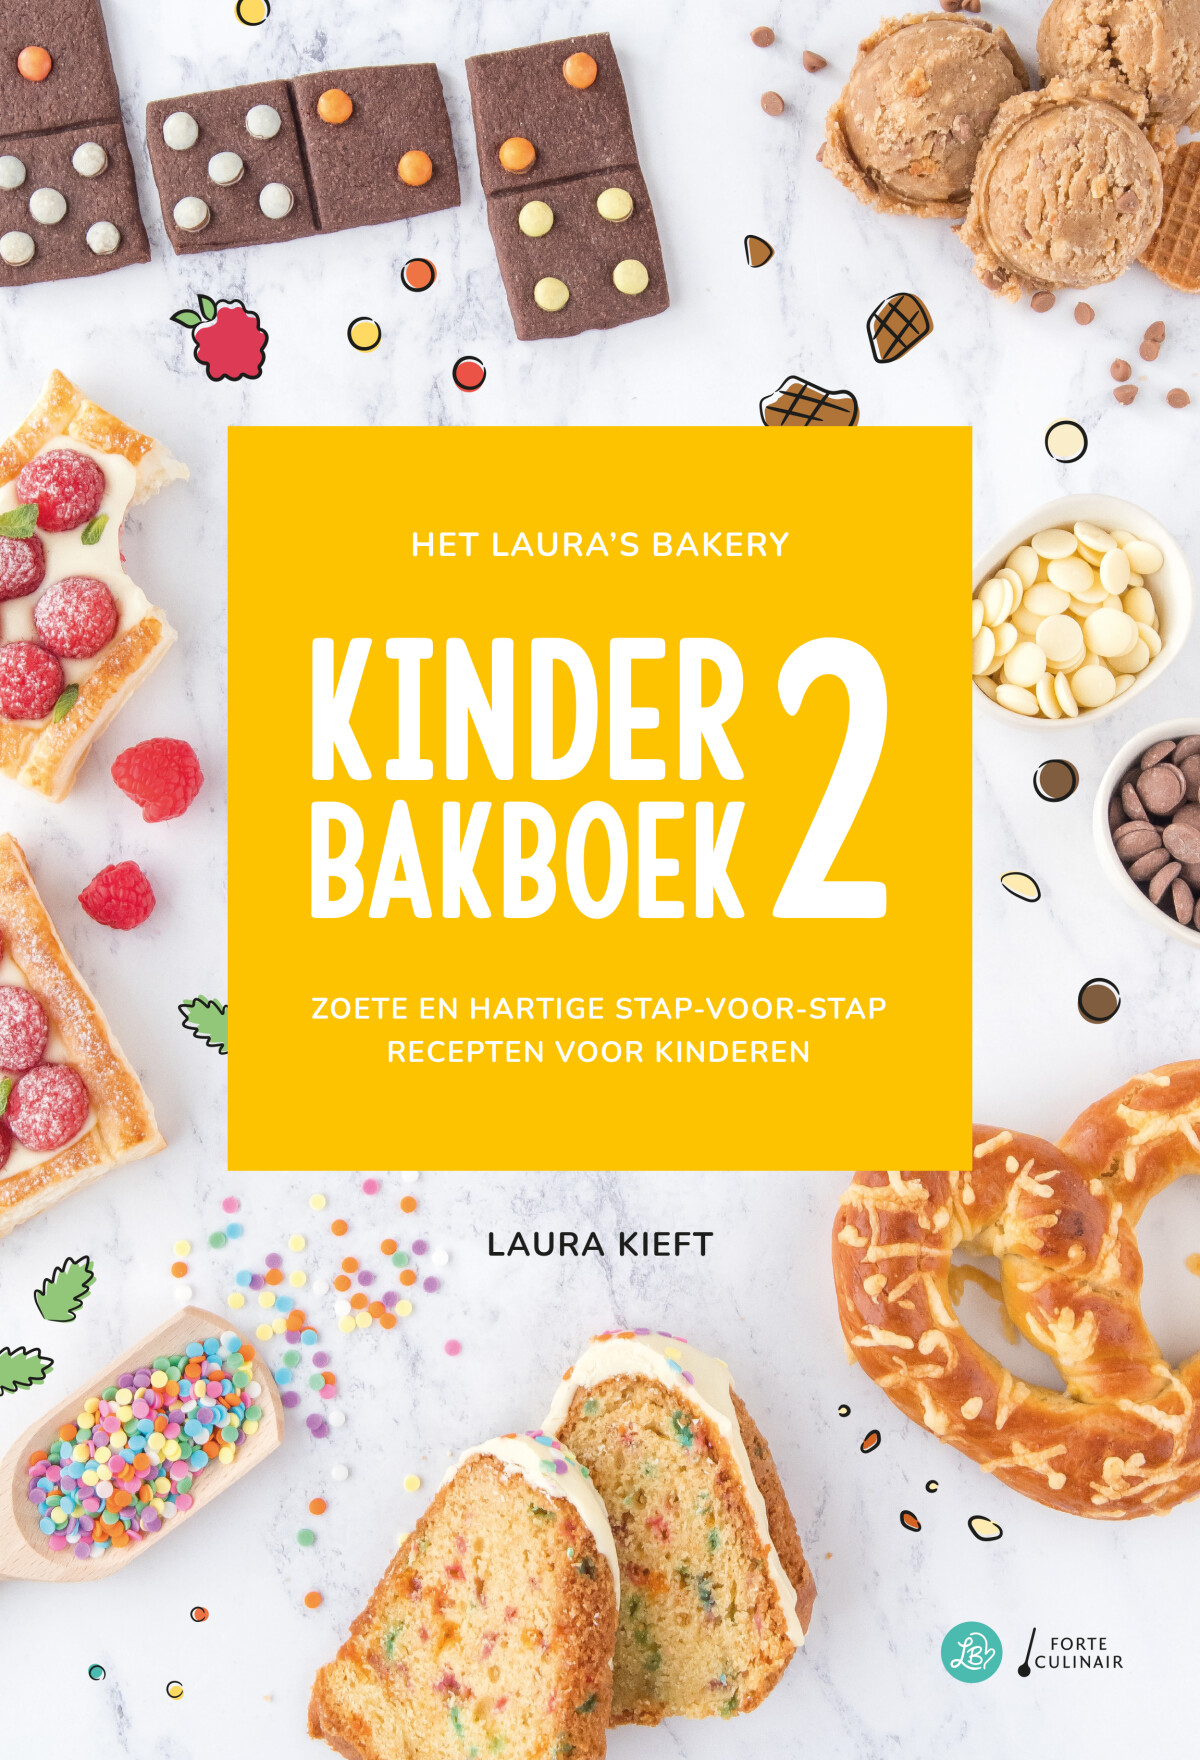 Het Laura's bakery kinder bakboek 2